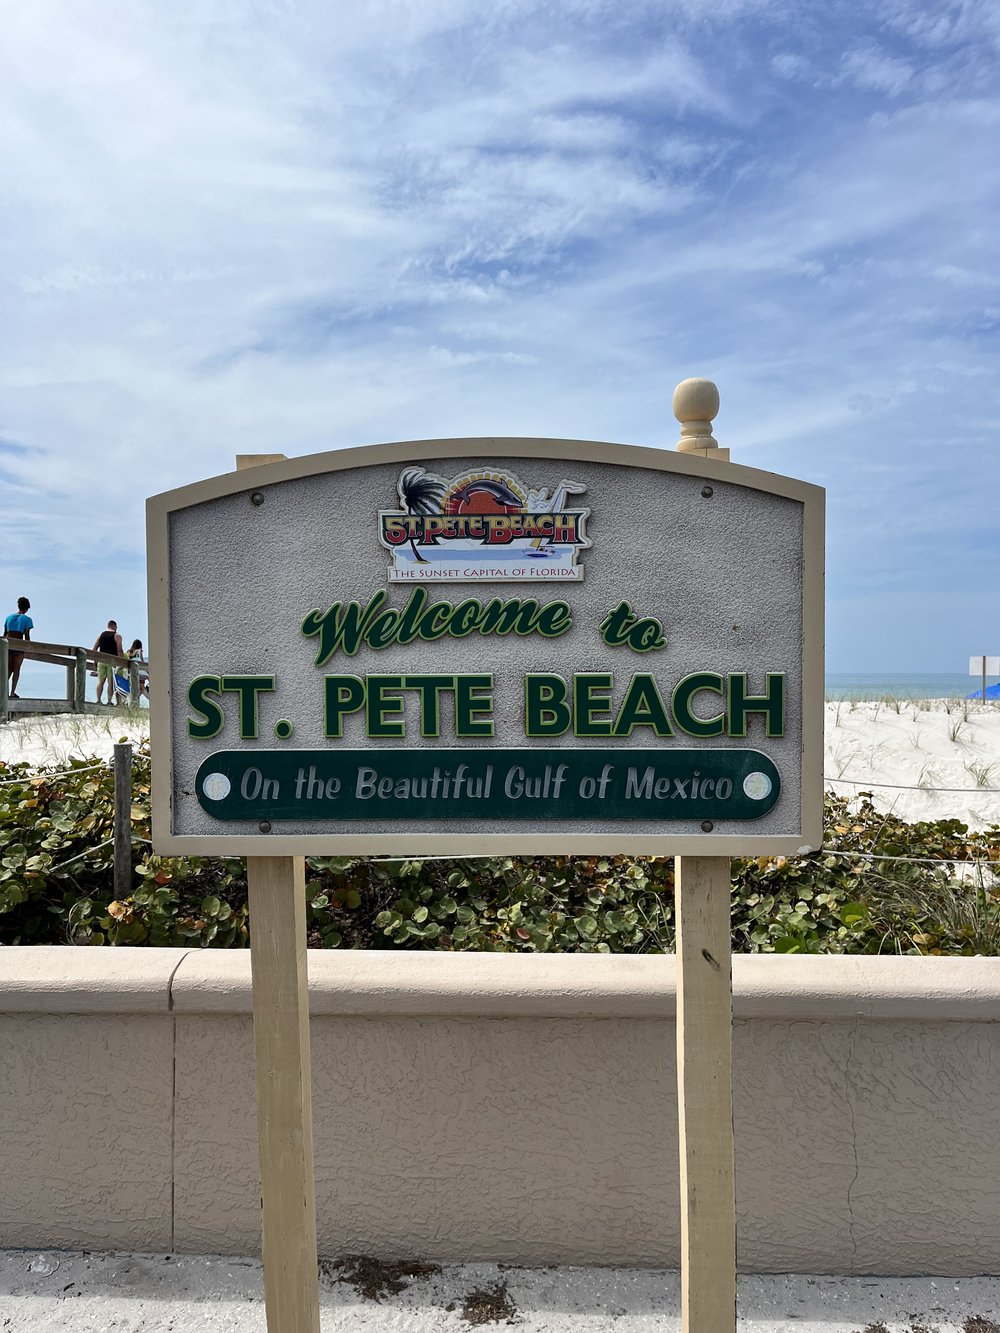 Pass-a-grille St Pete beach Florida.jpg